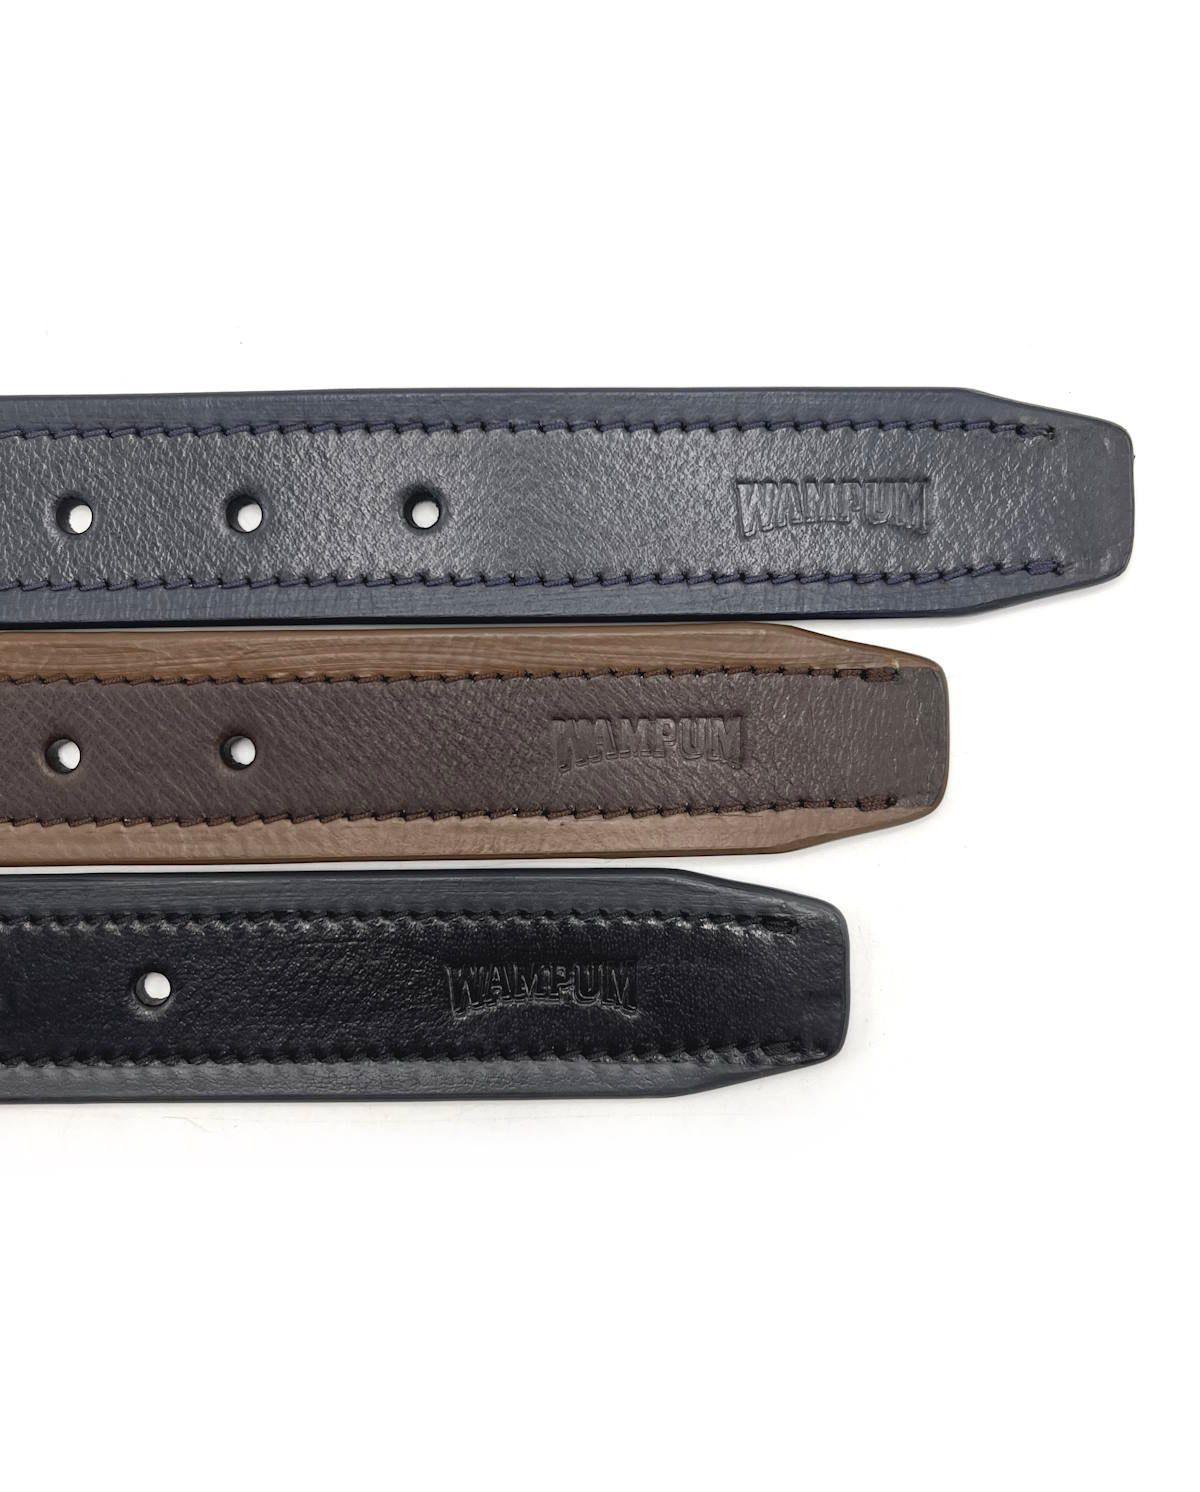 Genuine leather belt, Brand Wampum, art. IDK502/35